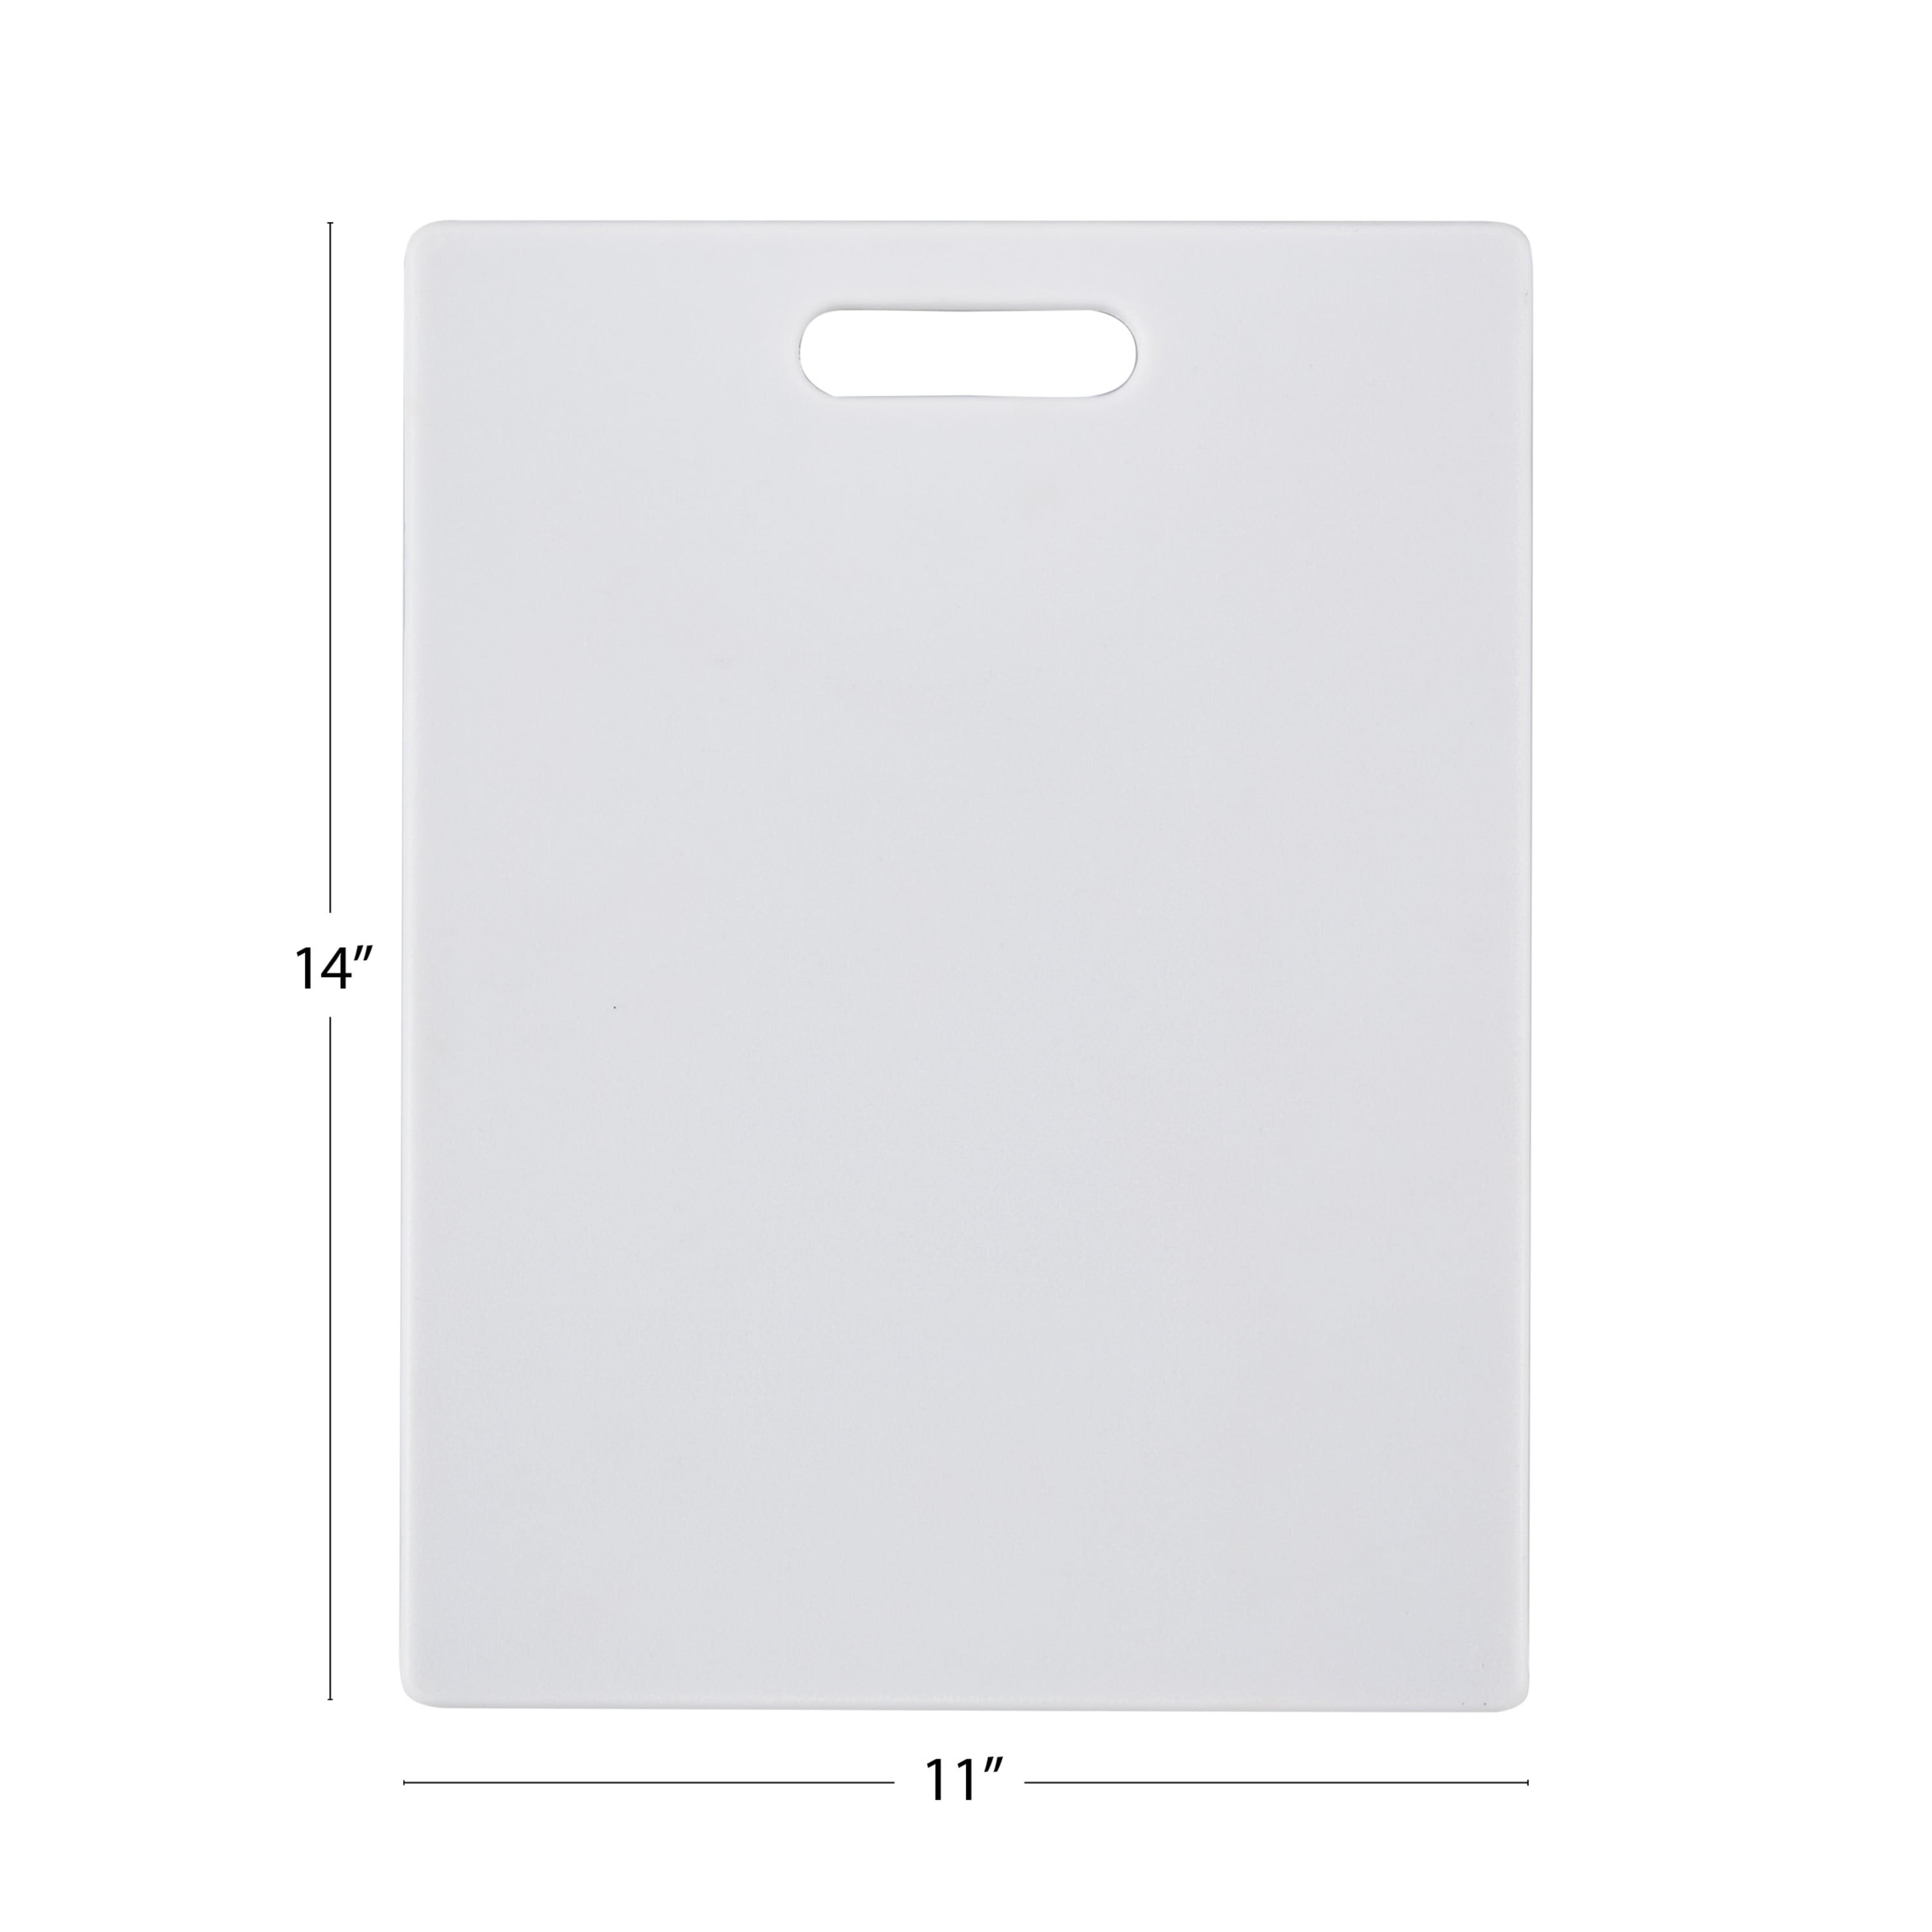 Buy Farberware Non-Slip Poly Cutting Board White